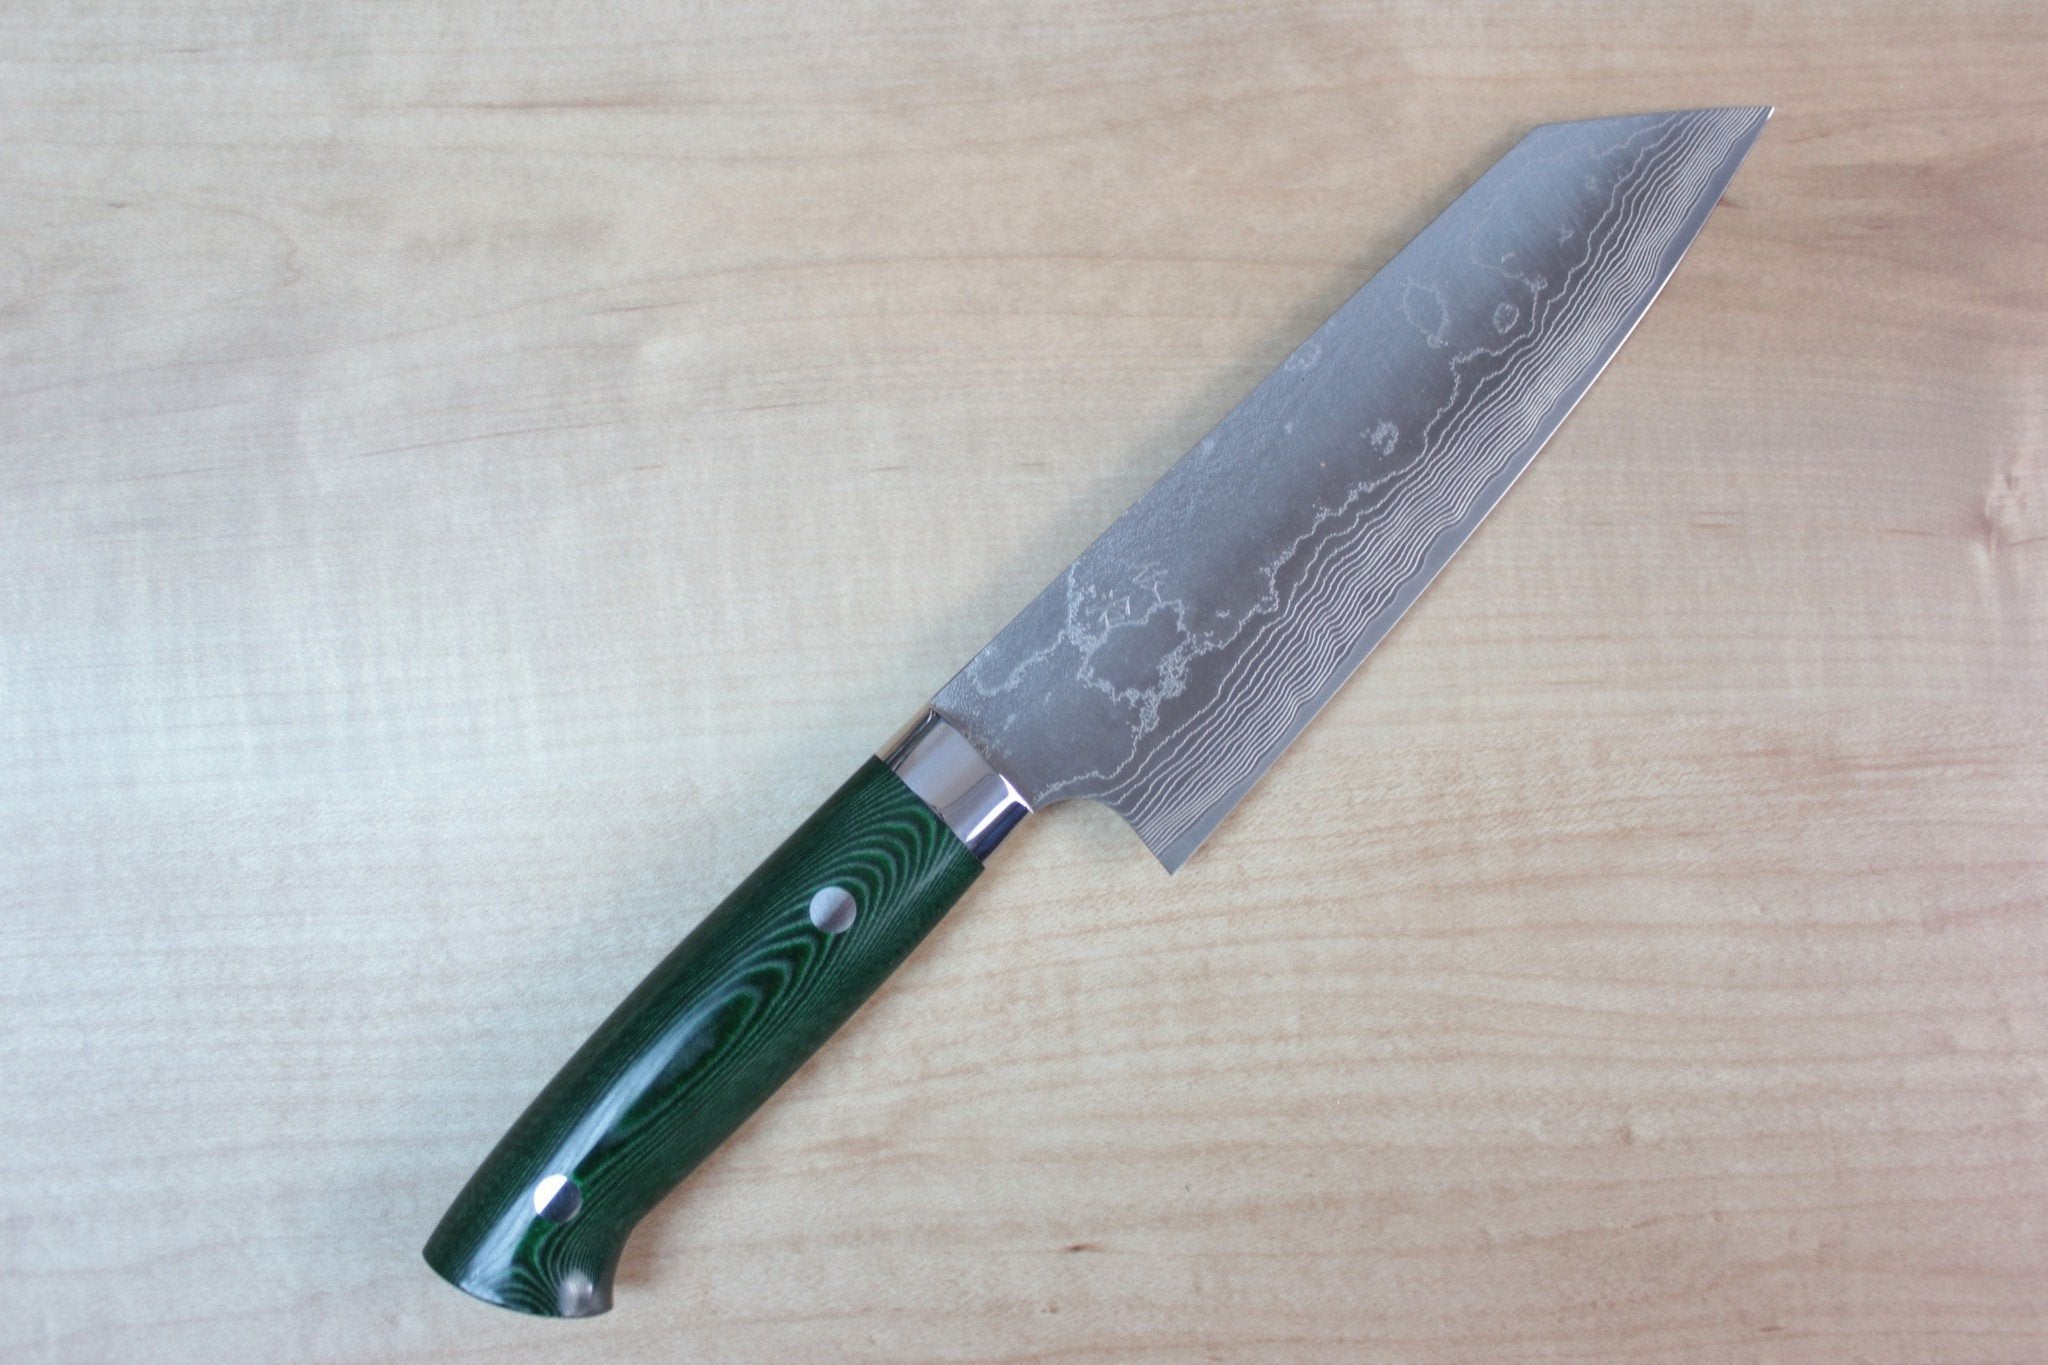 https://japanesechefsknife.com/cdn/shop/products/takeshi-saji-bunka-takeshi-saji-vg-10-custom-damascus-wild-series-bunka-175mm-6-8-inch-green-linen-micarta-handle-21558397262.jpg?v=1574700300